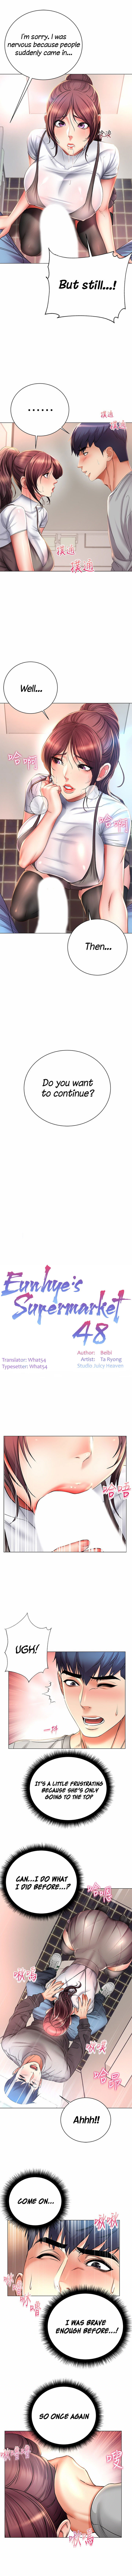 eunhyes-supermarket-chap-48-1